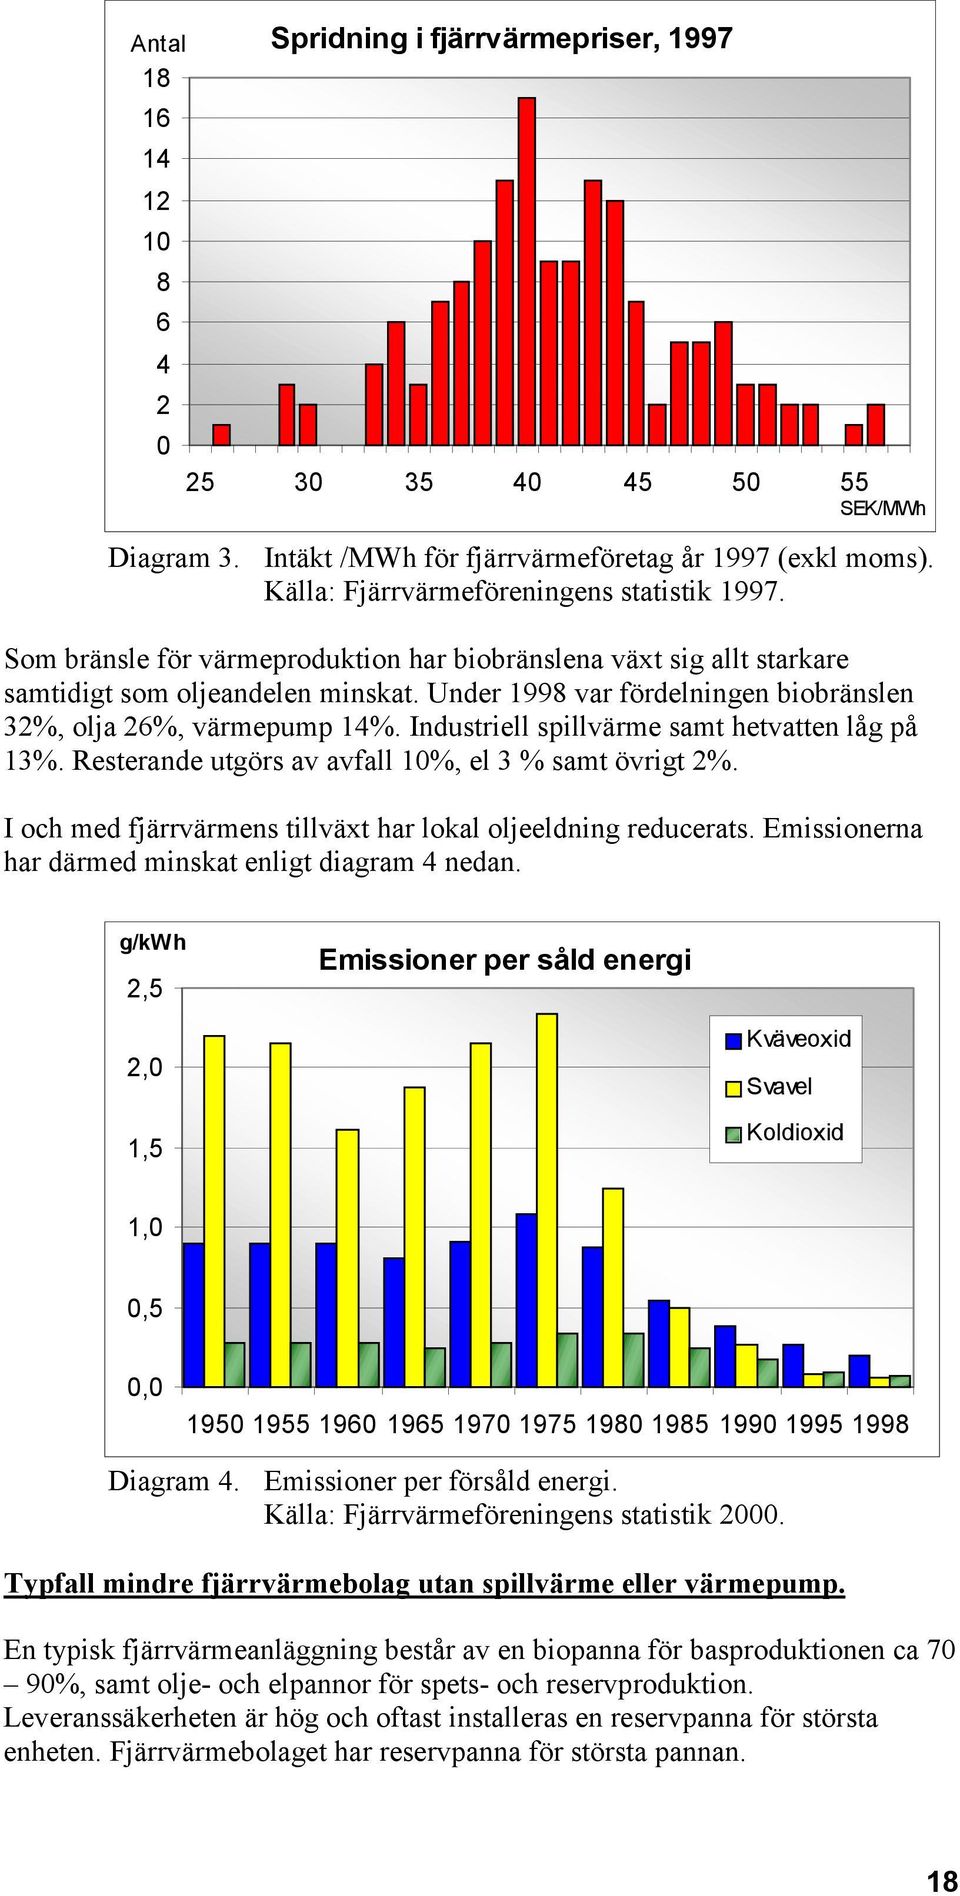 Under 1998 var fördelningen biobränslen 32%, olja 26%, värmepump 14%. Industriell spillvärme samt hetvatten låg på 13%. Resterande utgörs av avfall 10%, el 3 % samt övrigt 2%.